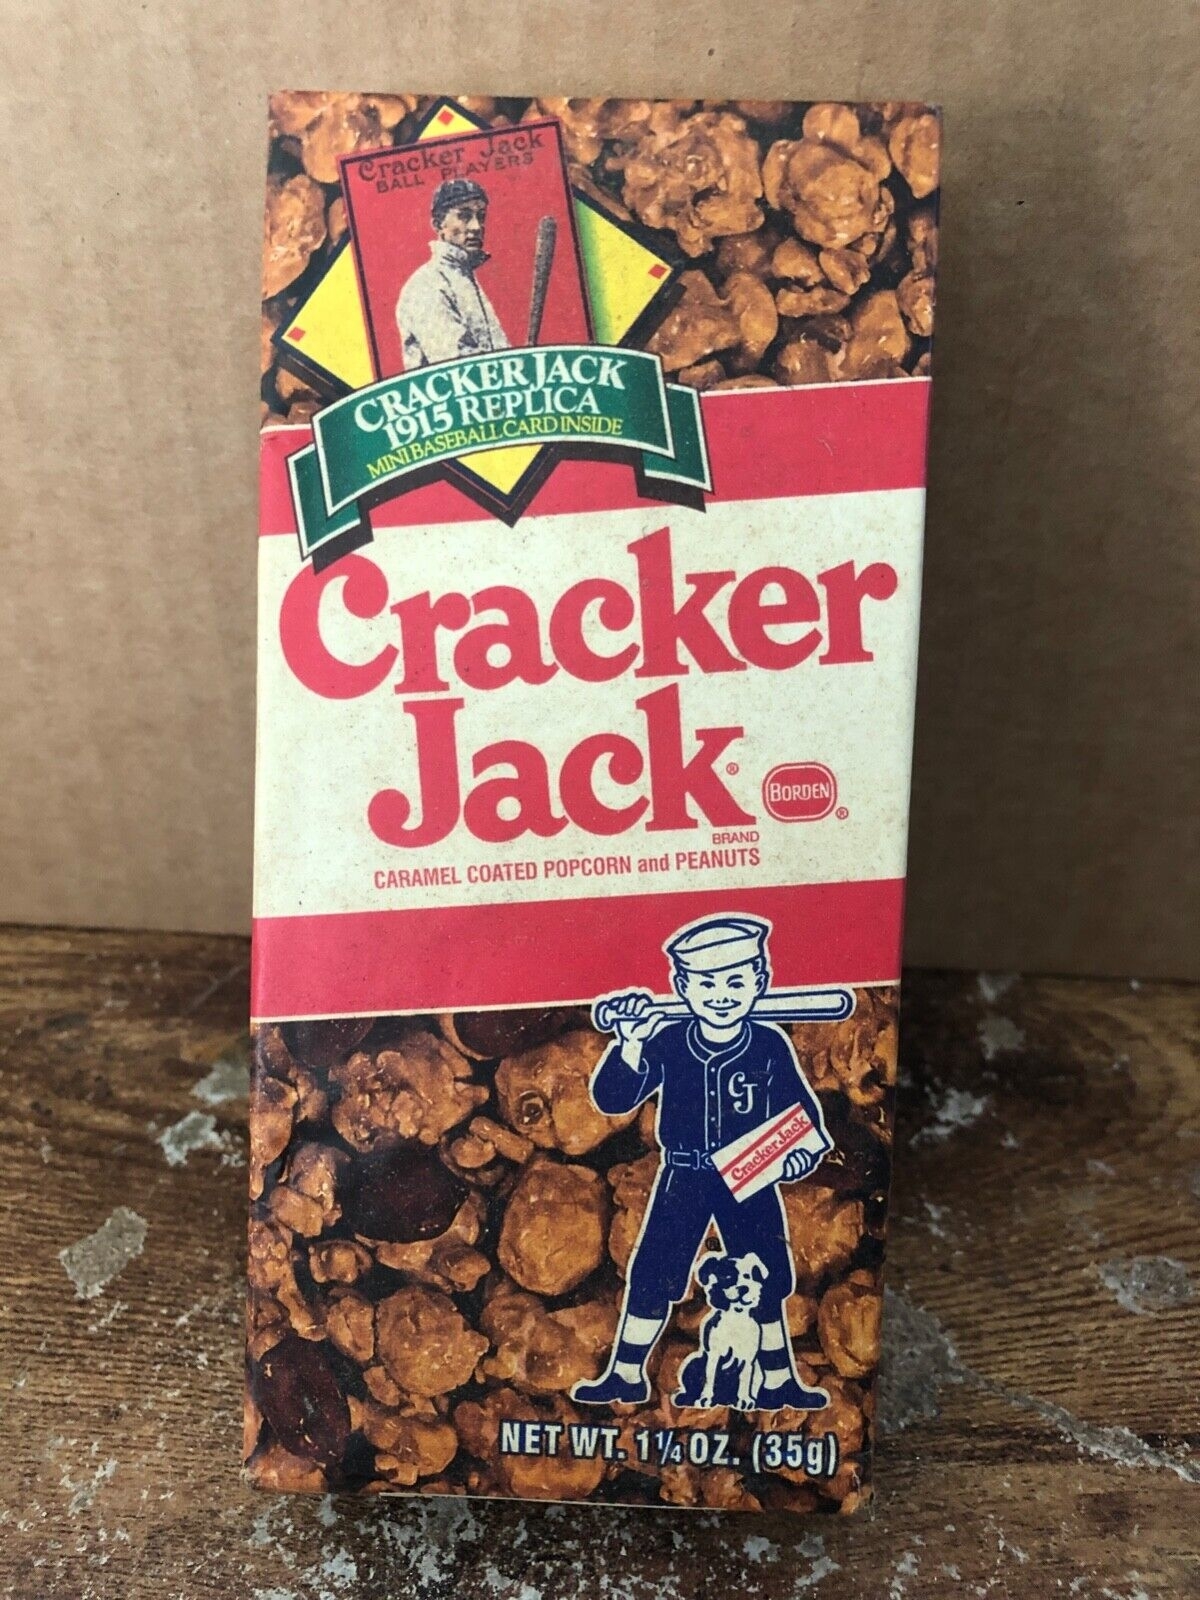 A Cracker Jack box